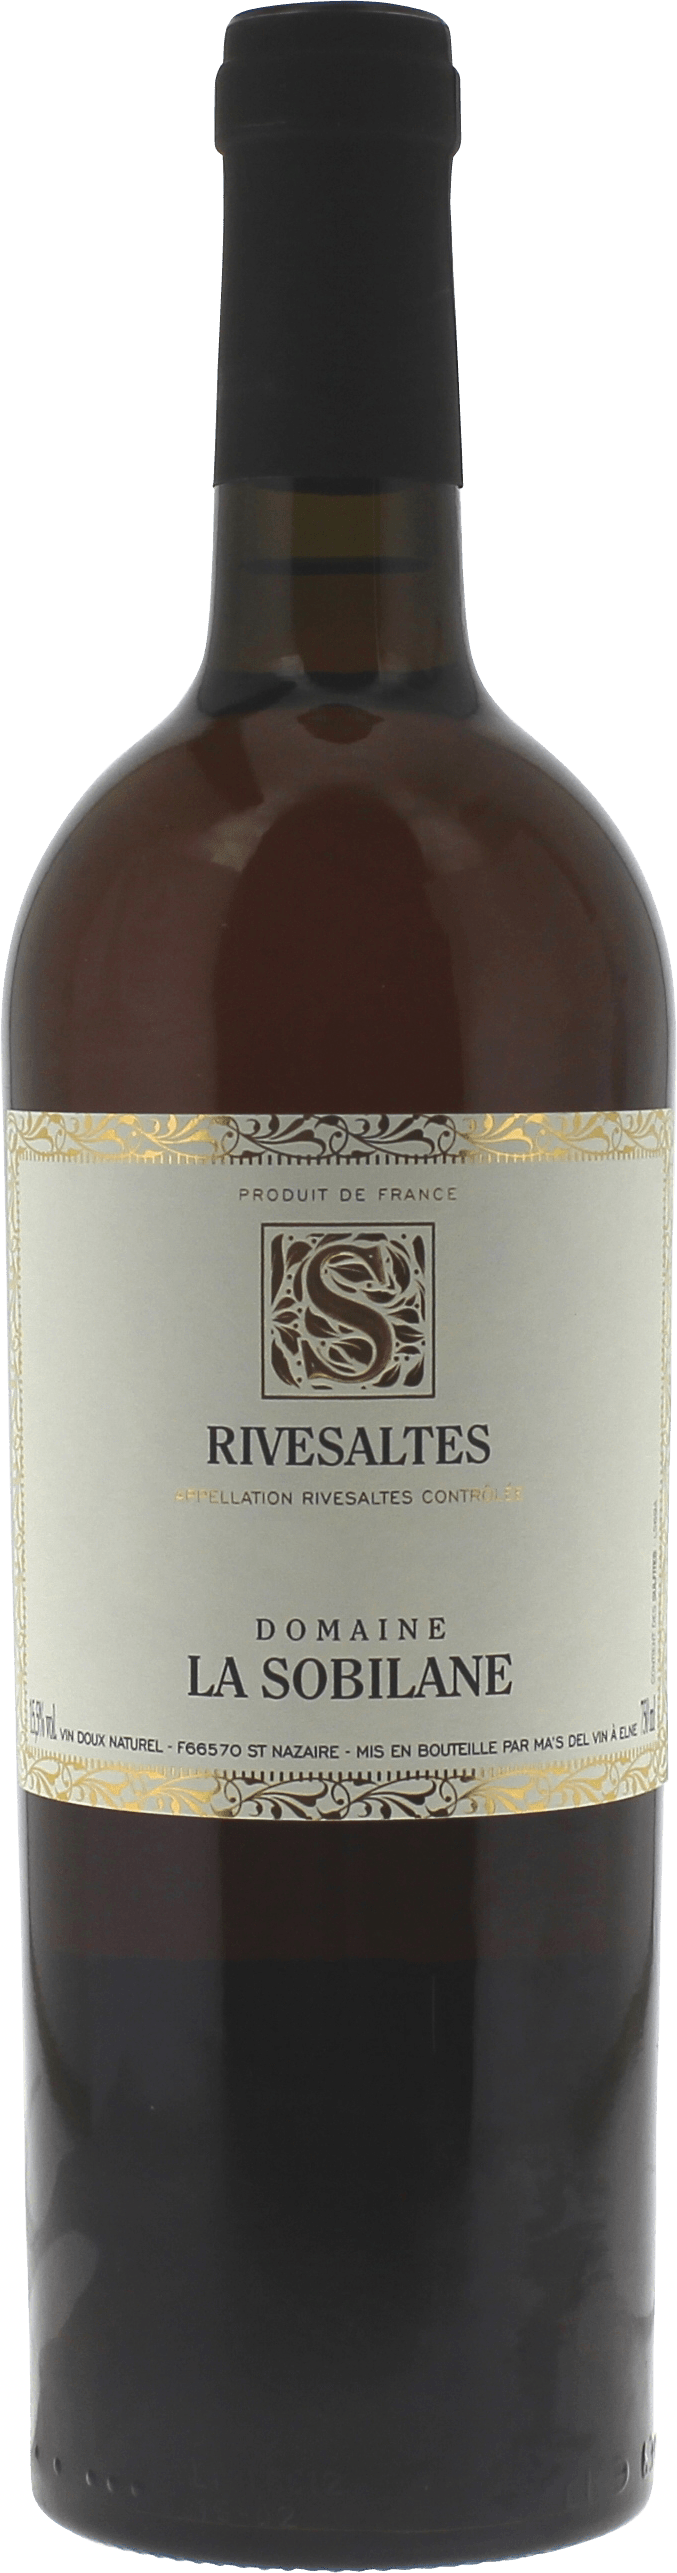 Rivesaltes domaine la sobilane 1960 Vin doux naturel Rivesaltes, Vin doux naturel